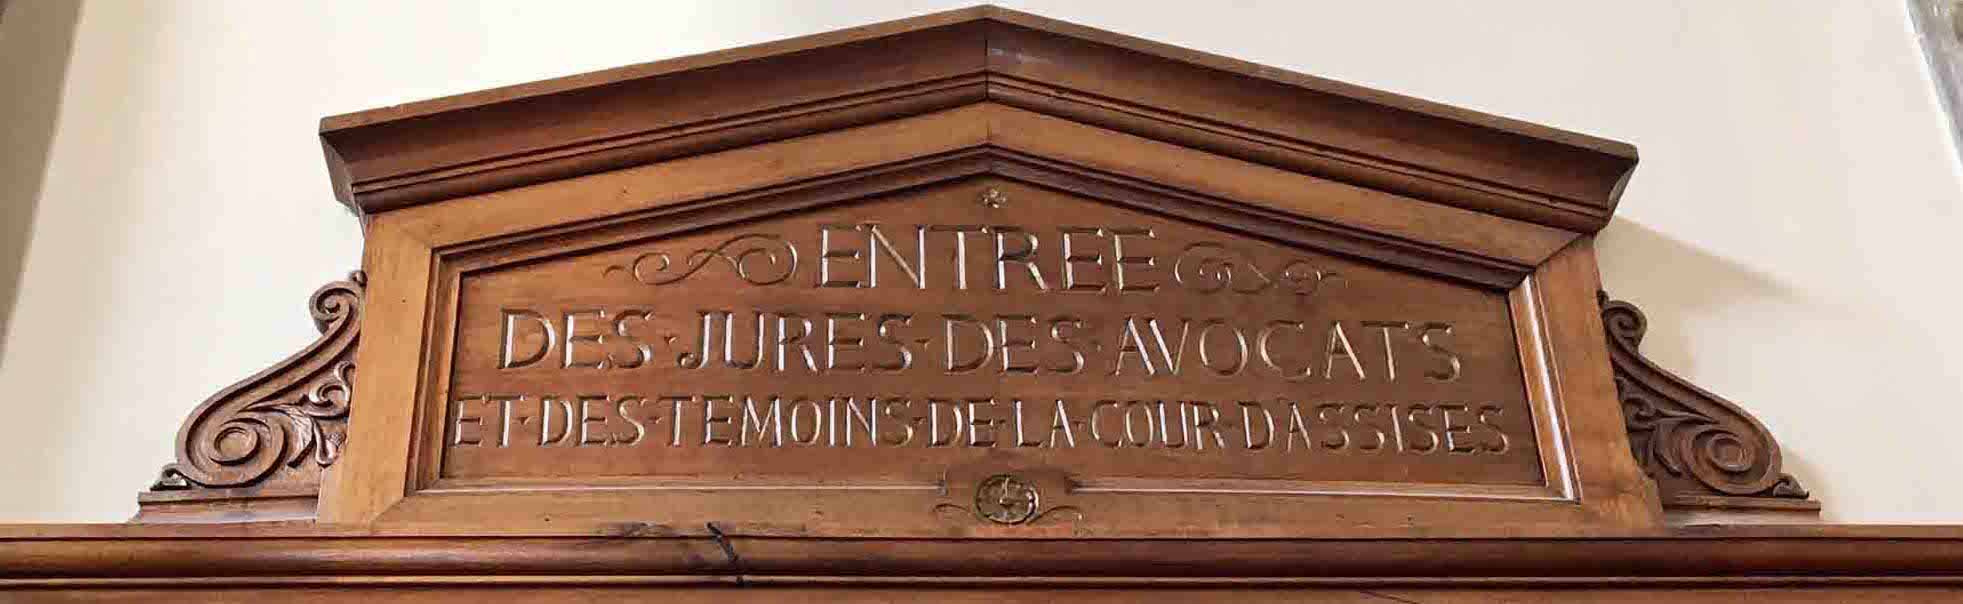 Palais de justice Lyon et cour d'assises